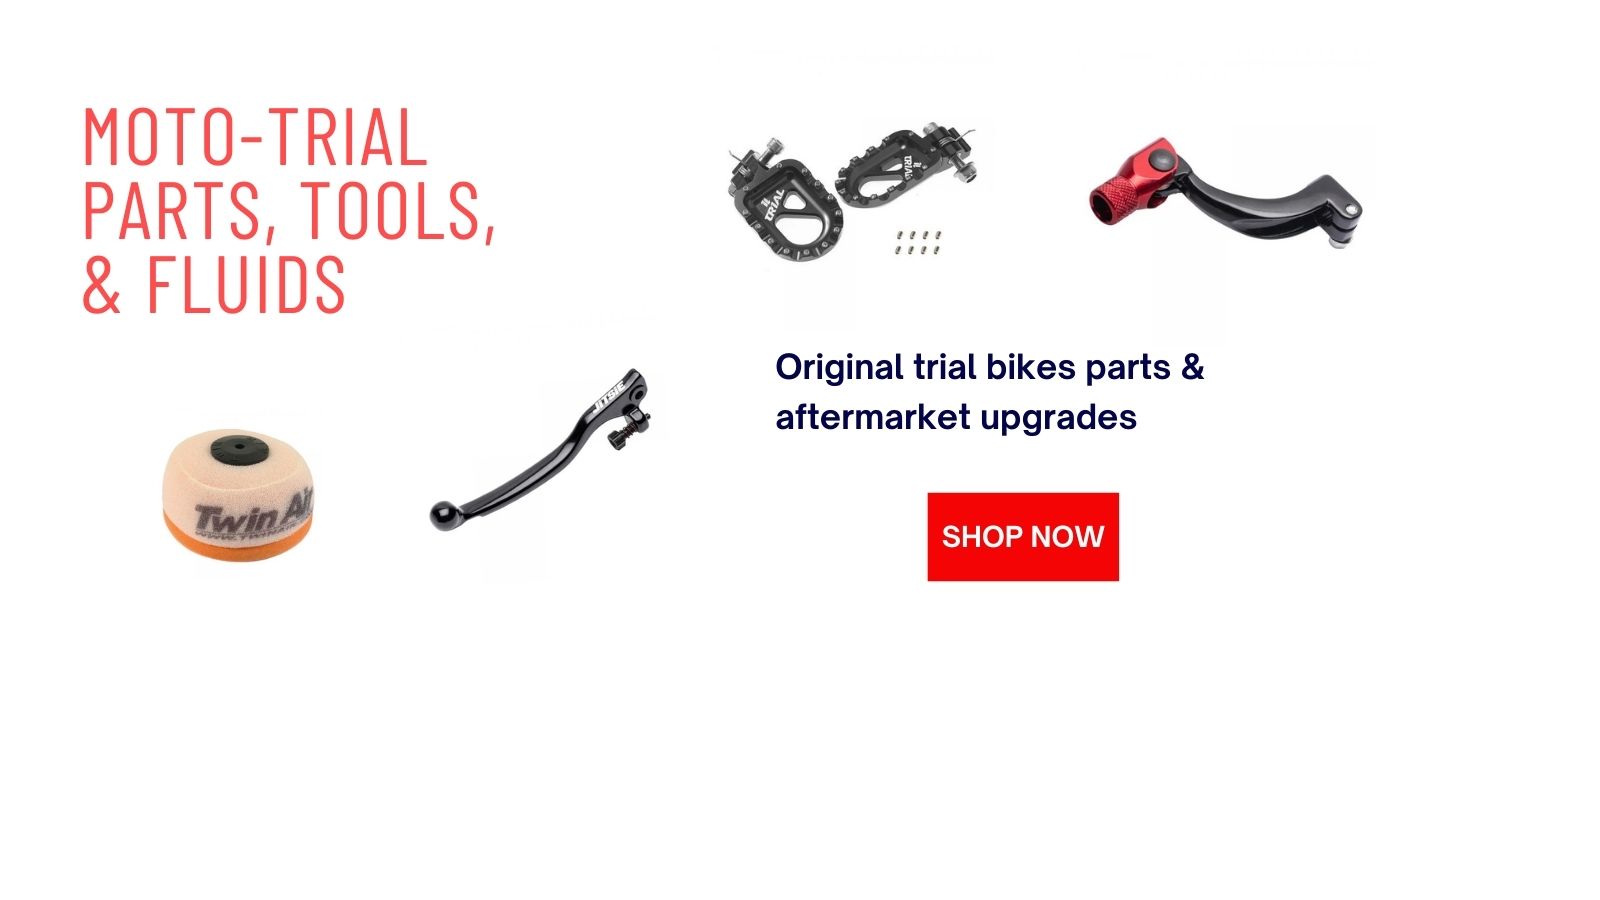 Brake Fluid DOT-4 - Trial Store USA.com